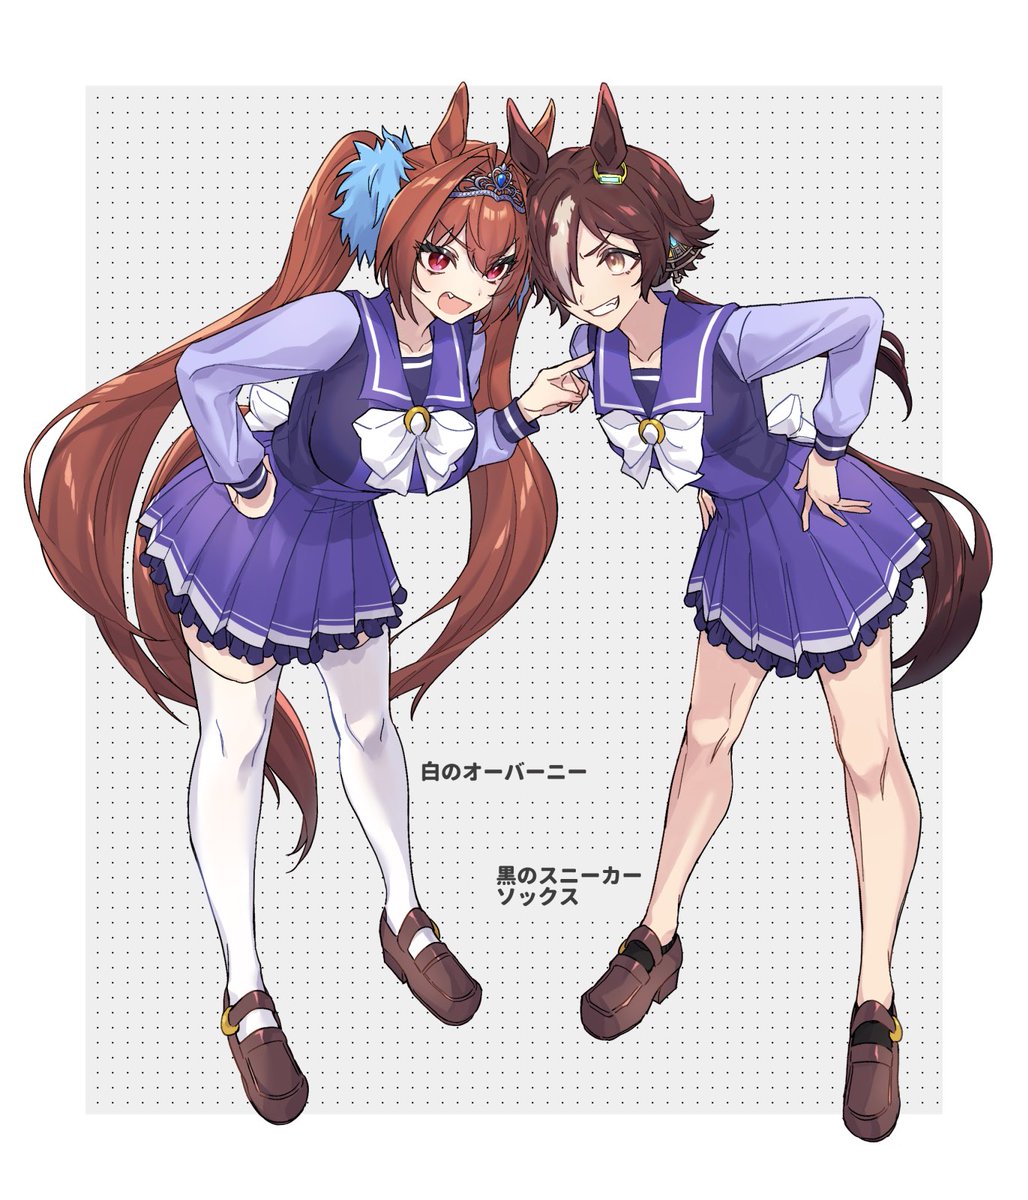 daiwa scarlet (umamusume) ,vodka (umamusume) multiple girls 2girls brown hair horse ears animal ears long hair horse girl  illustration images